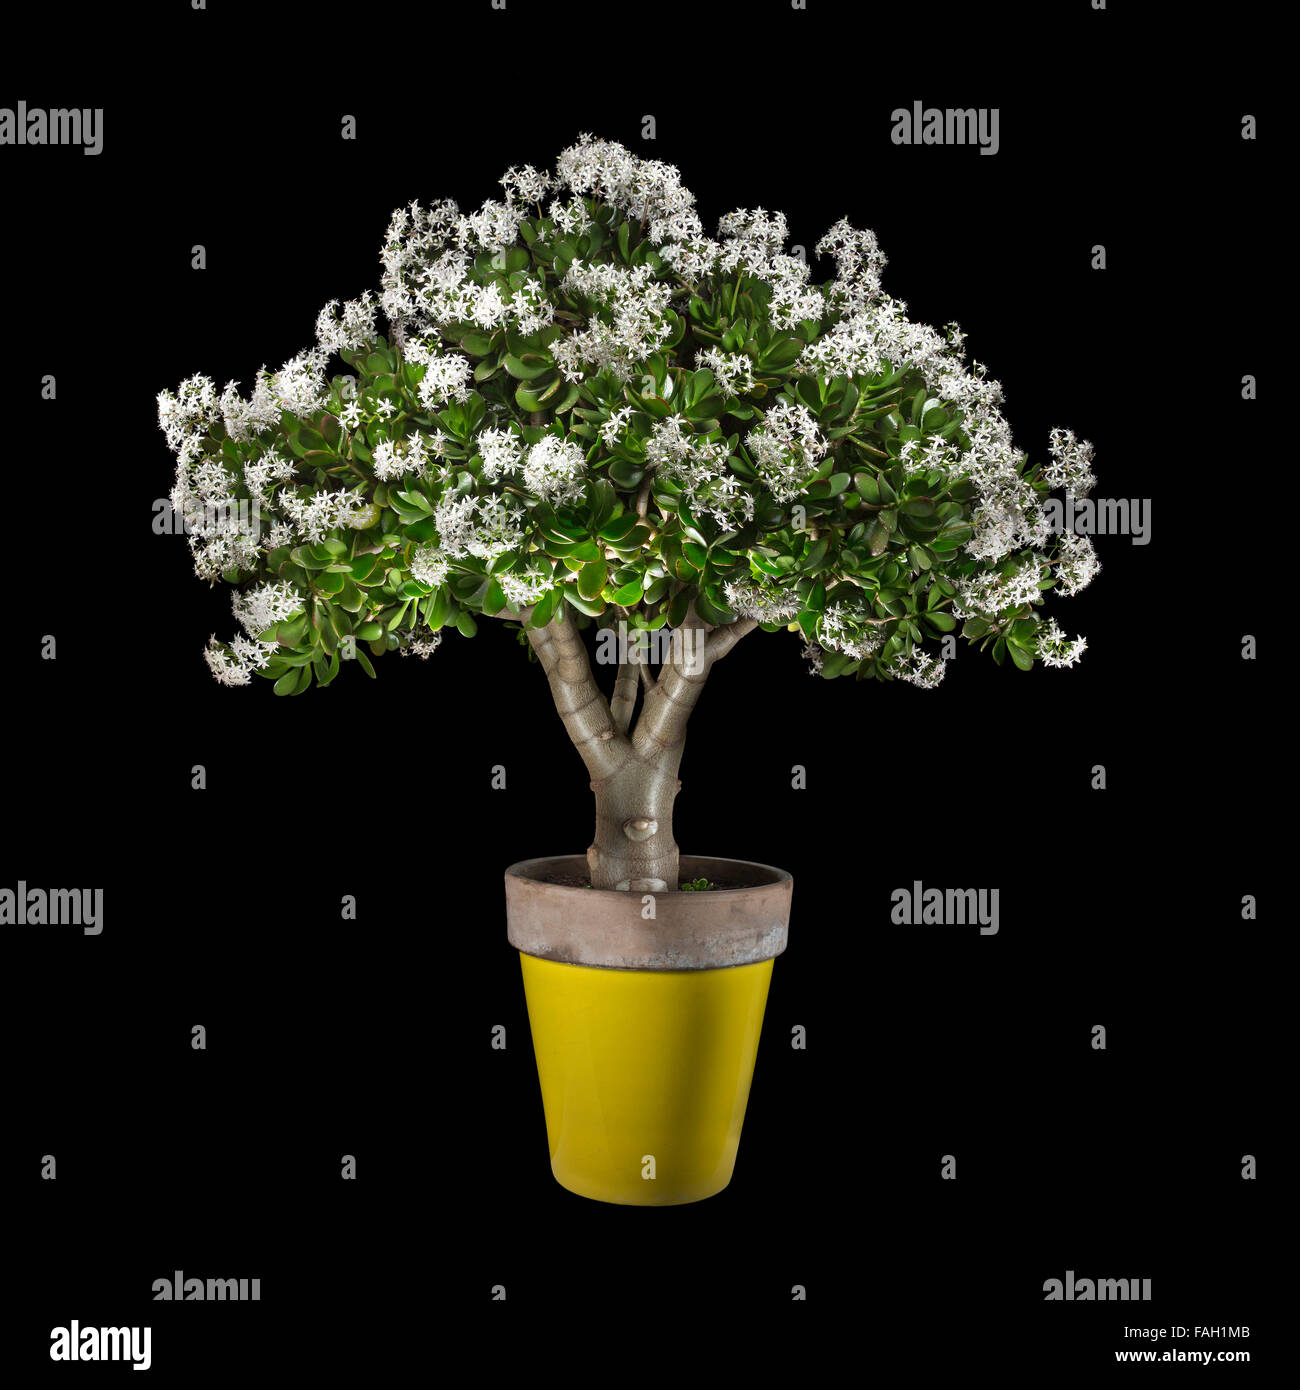 Eine Topfpflanze von einer blühenden Crassula Ovata, allgemein bekannt als Jade-Anlage, fotografiert im Studio auf einem schwarzen Hintergrund. Stockfoto